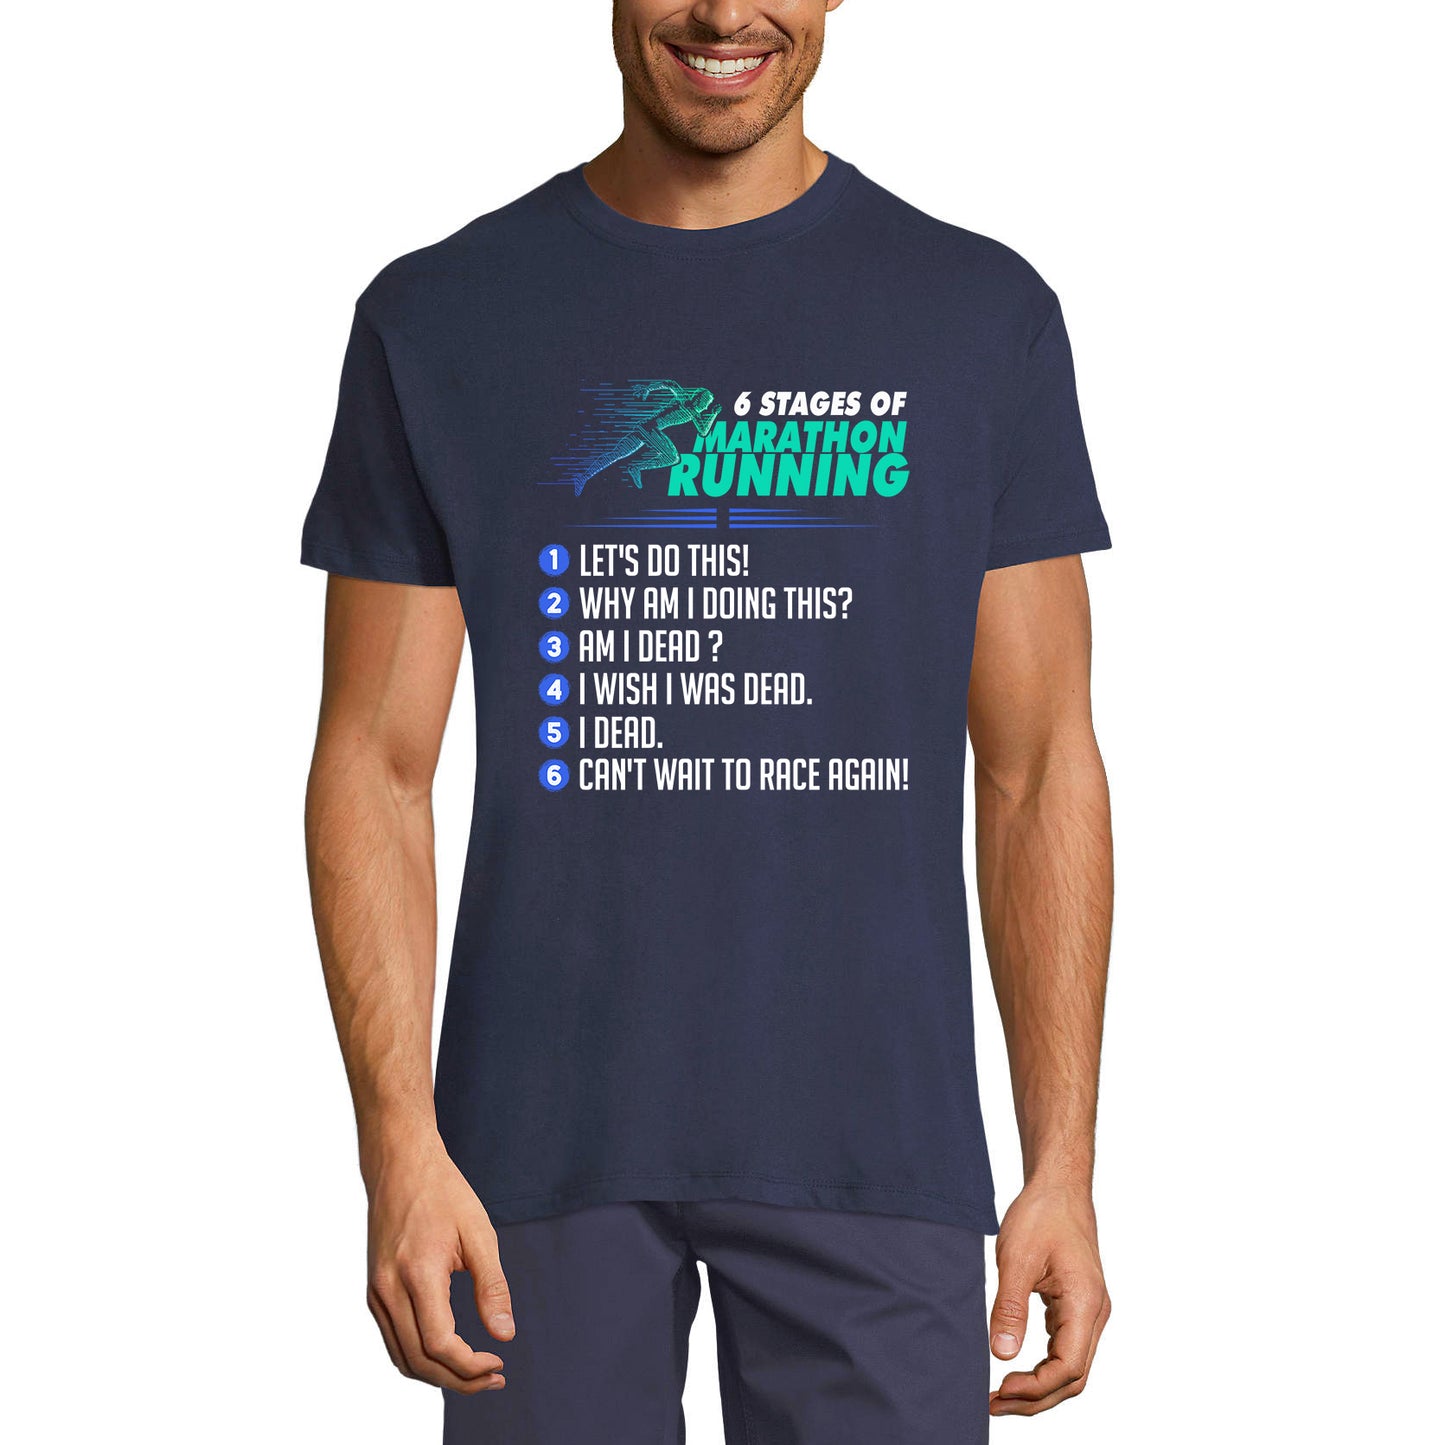 ULTRABASIC Men's Novelty T-Shirt 6 Stages of Marathon Running - Funny Runner Tee Shirt